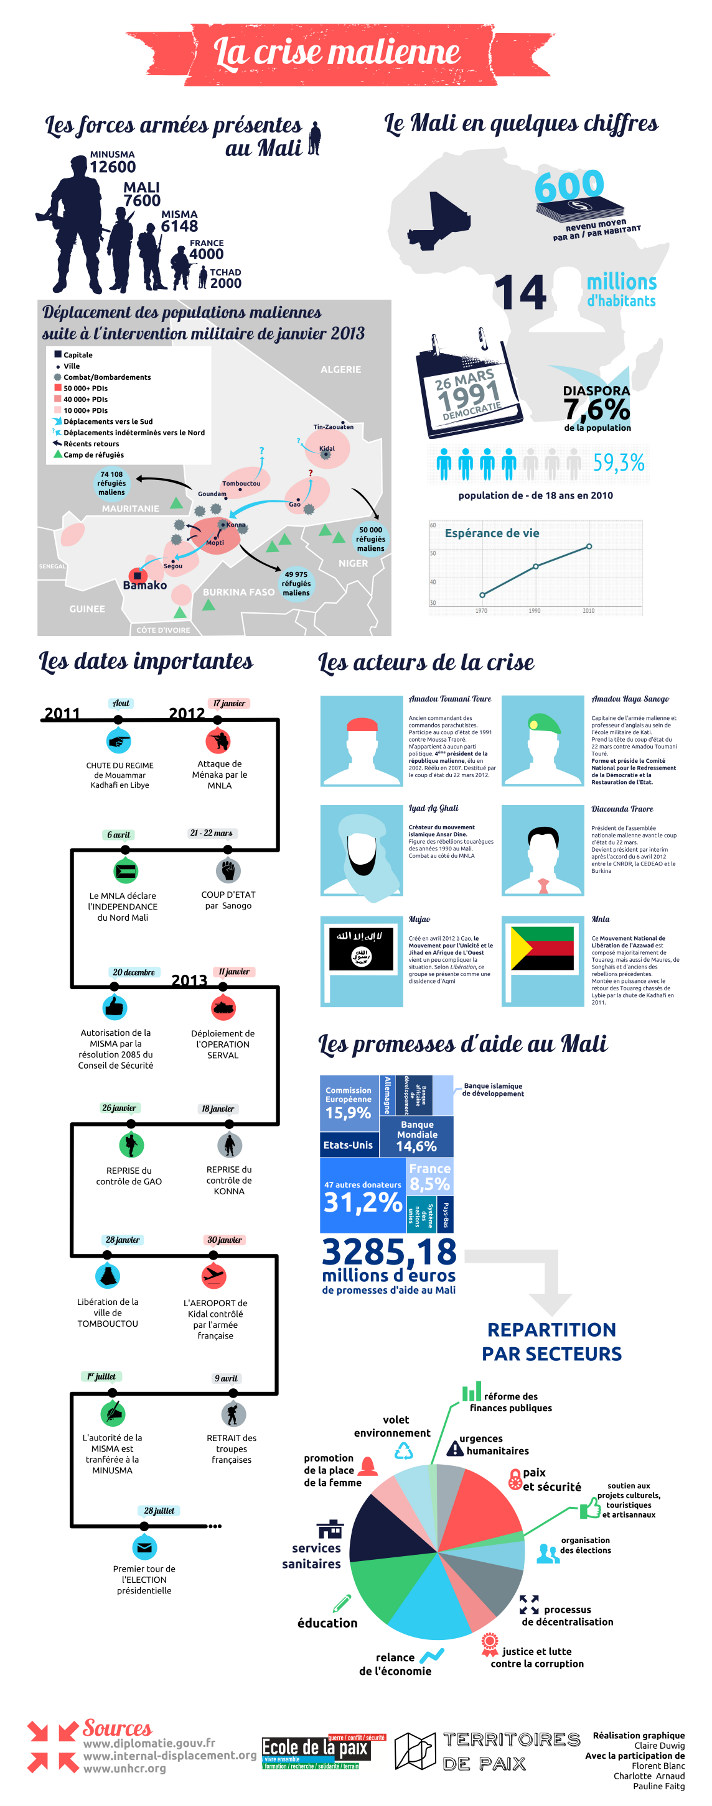 Crise malienne - infographie pour comprendre l'enjeu de l'aide internationale dans la reconstruction